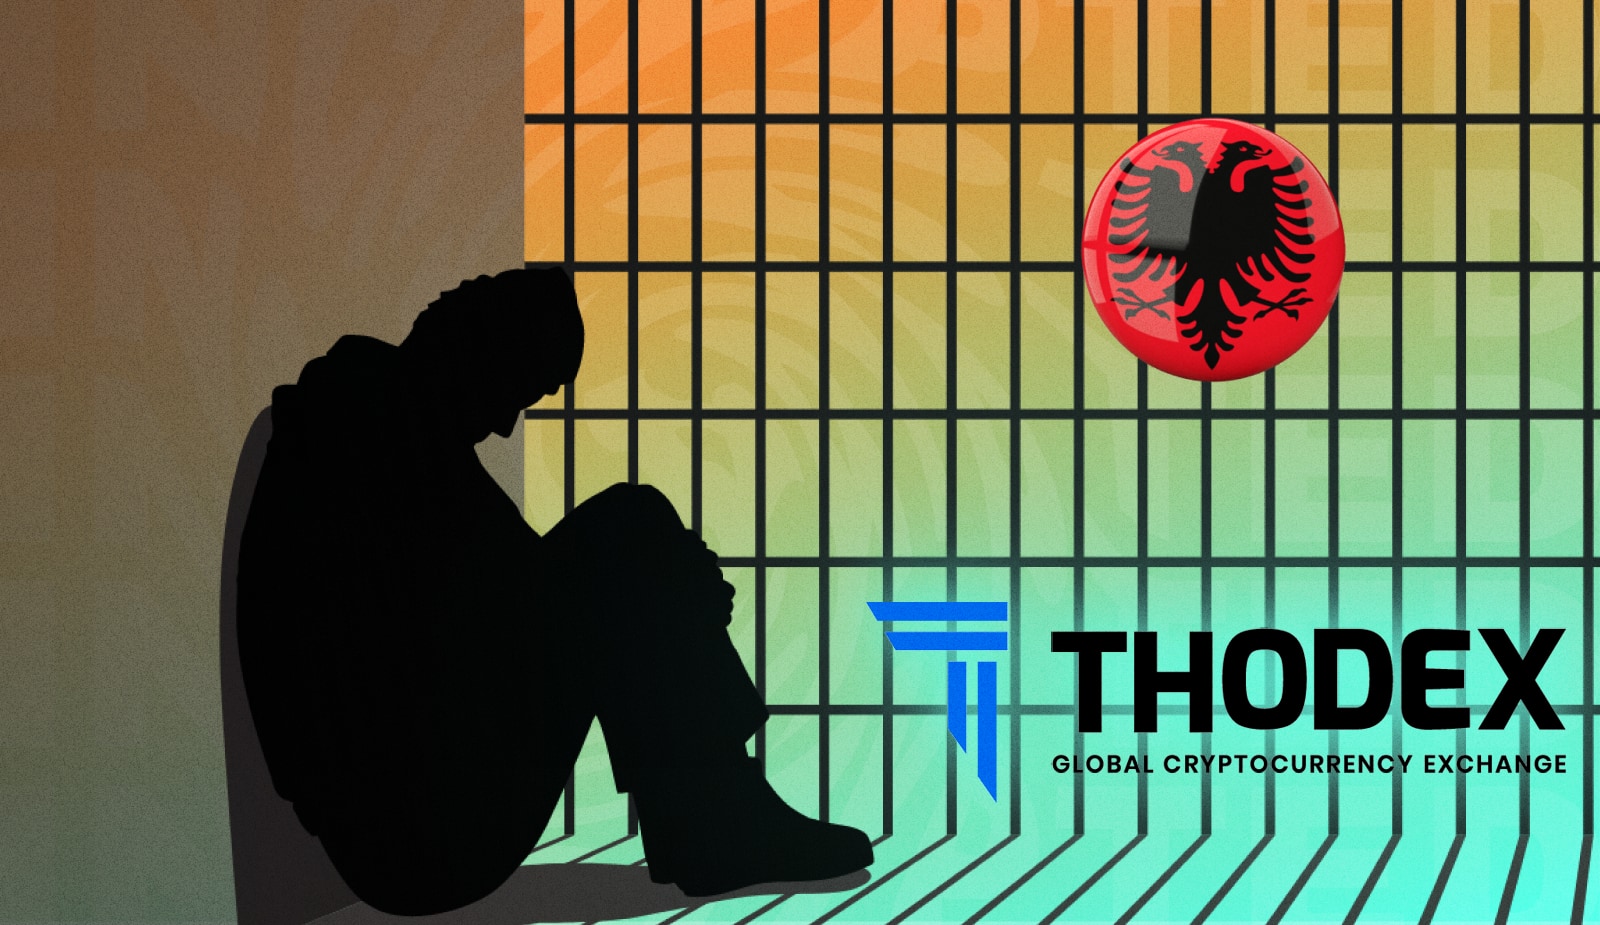 Албания арестовала главу криптобиржи Thodex: ему грозит тысячелетний срок. Заглавный коллаж новости.